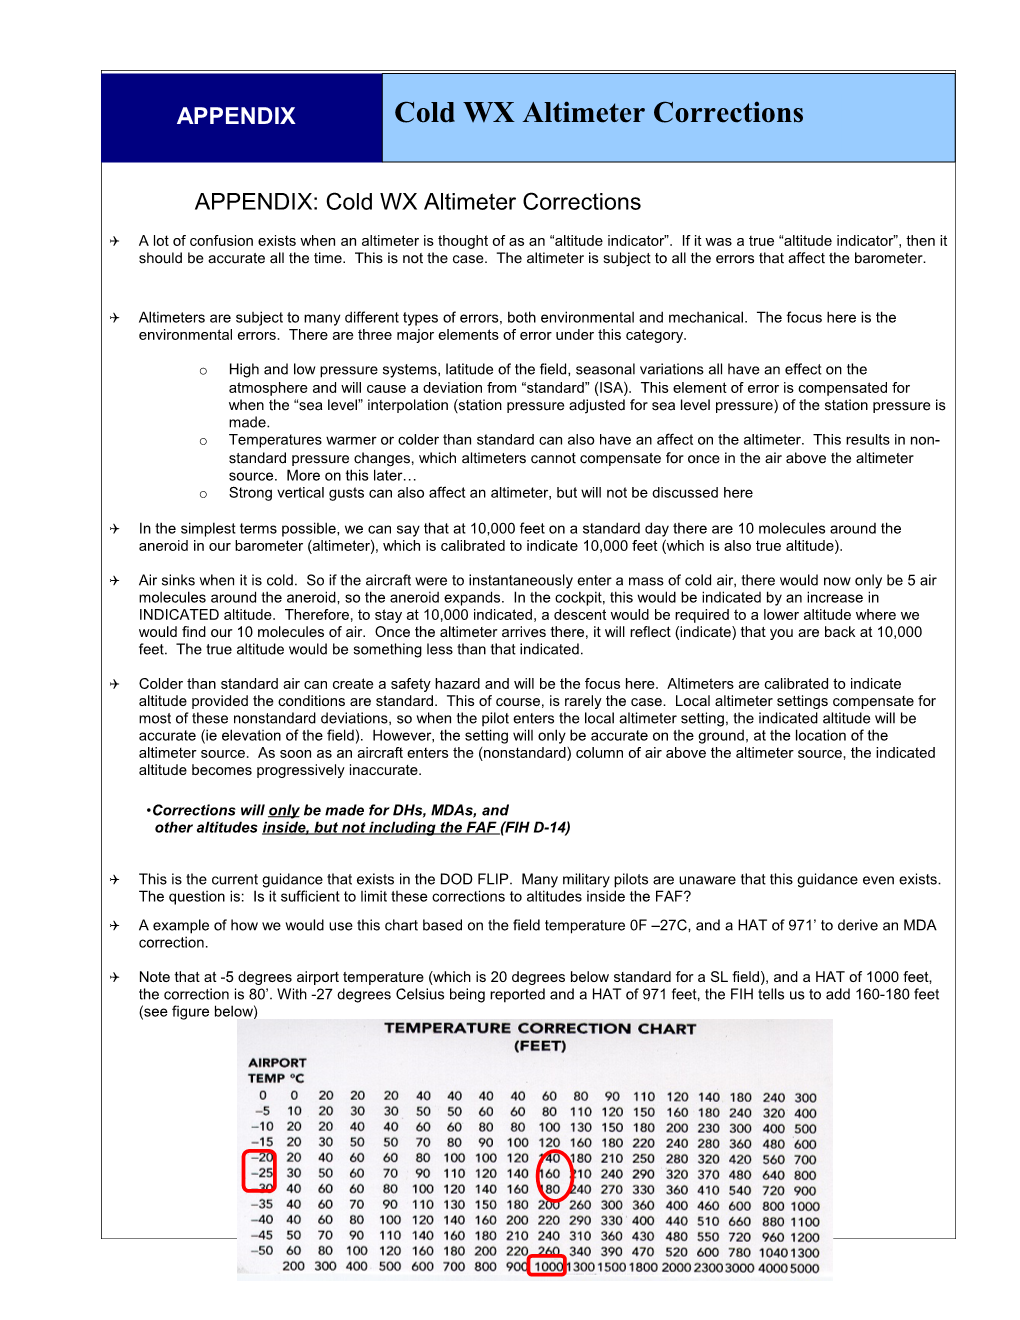 APPENDIX: Cold WX Altimeter Corrections